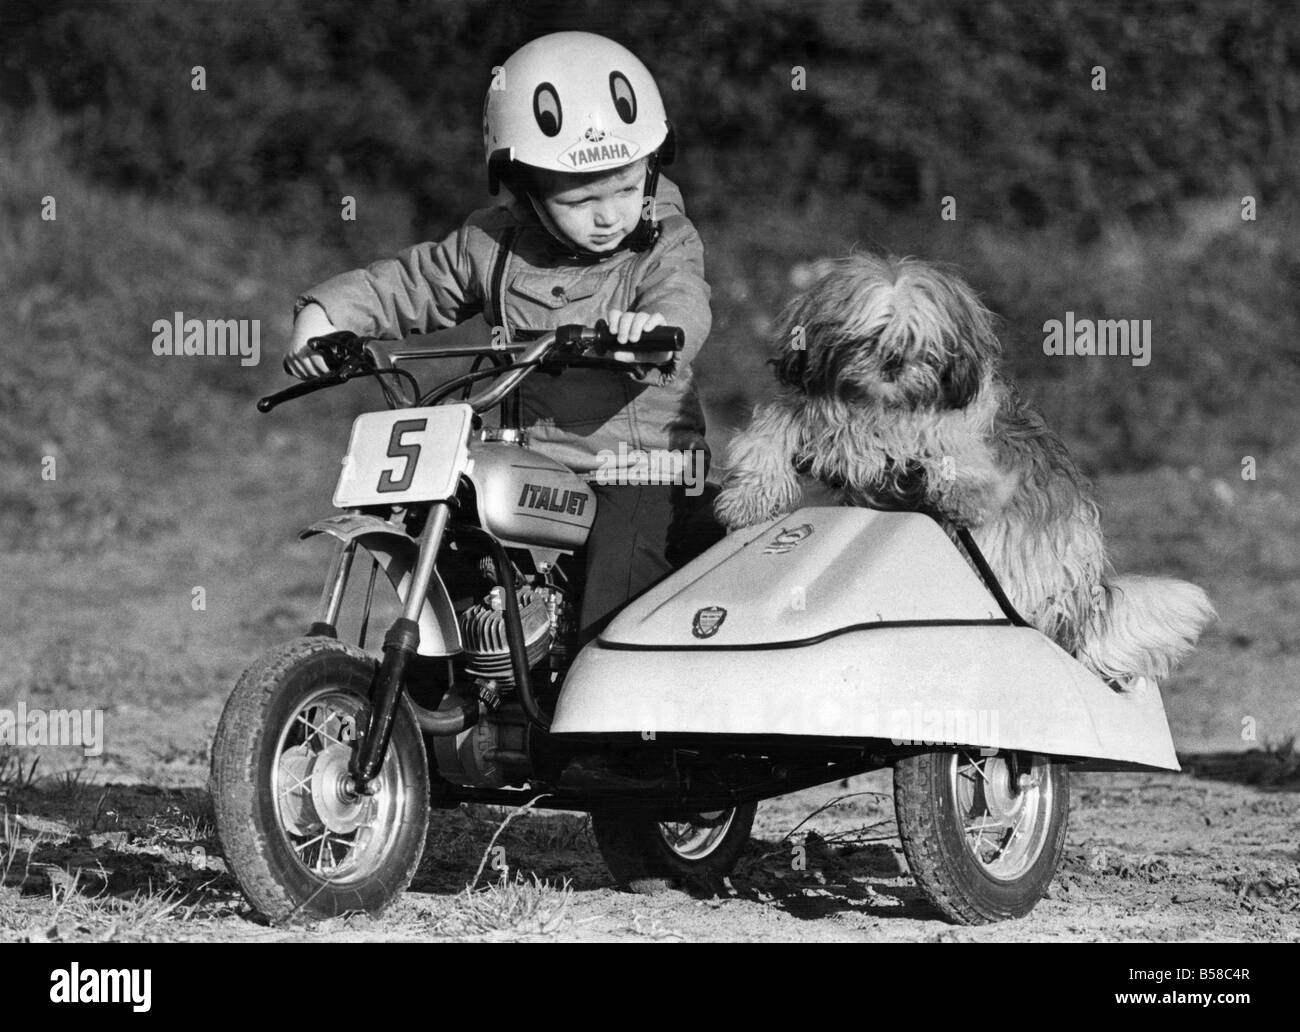 Vroom... Eine Tonne Kind: Motorrad Kind Jason mag klein sein, aber er ist schnell. Da sein Vater, ehemaligen Rennen-Ass Jim Smyth, ihm ein Motorrad gekauft, ist er sozusagen in eine richtige kleine Tearaway verwandelt. Eine Variante des Gashebels auf seiner 47 cc italienischen Mini-Maschine und die süße Musik schickt ihn Rennen aus einem ratternden 5 mph. Und das macht Sie ein Bühnenbekleidung Kind bist du nur zwei. Aber seinen Hund Buddy Grenze ist nur 4 km/h. etwas schneller und er eilt aus dem Beiwagen. Dezember 1976 P006095 Stockfoto